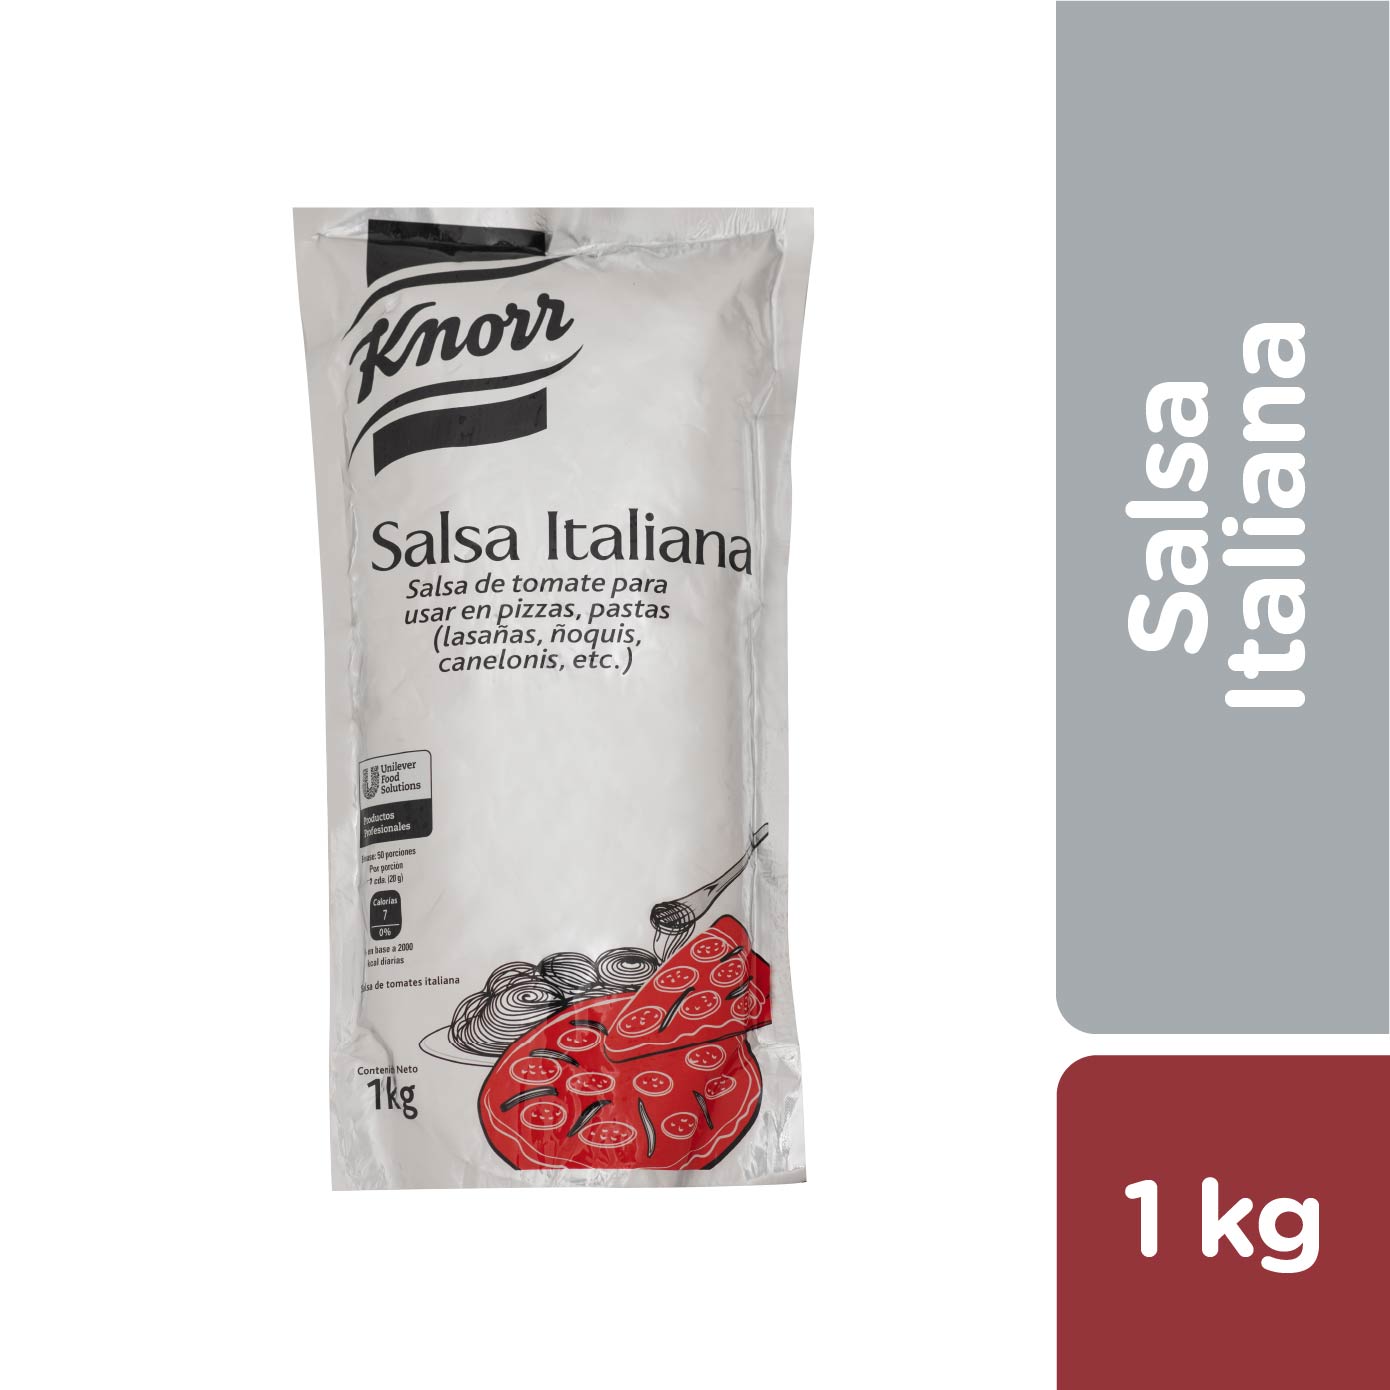 Knorr Salsa Italiana 1 kg - 